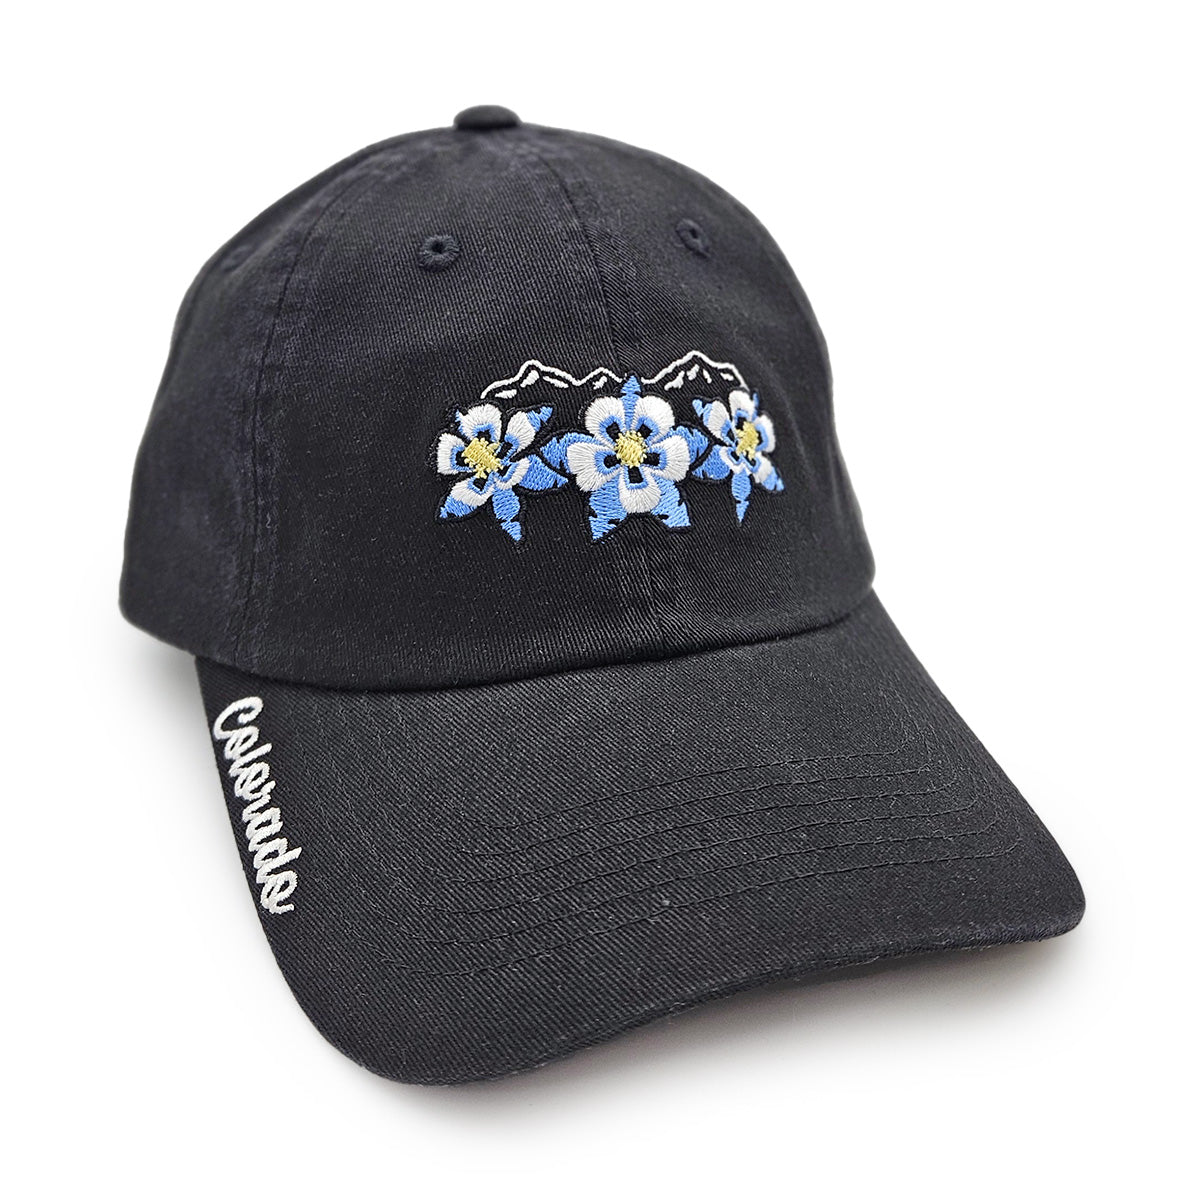 Floral Range Hat - Unstructured - Black